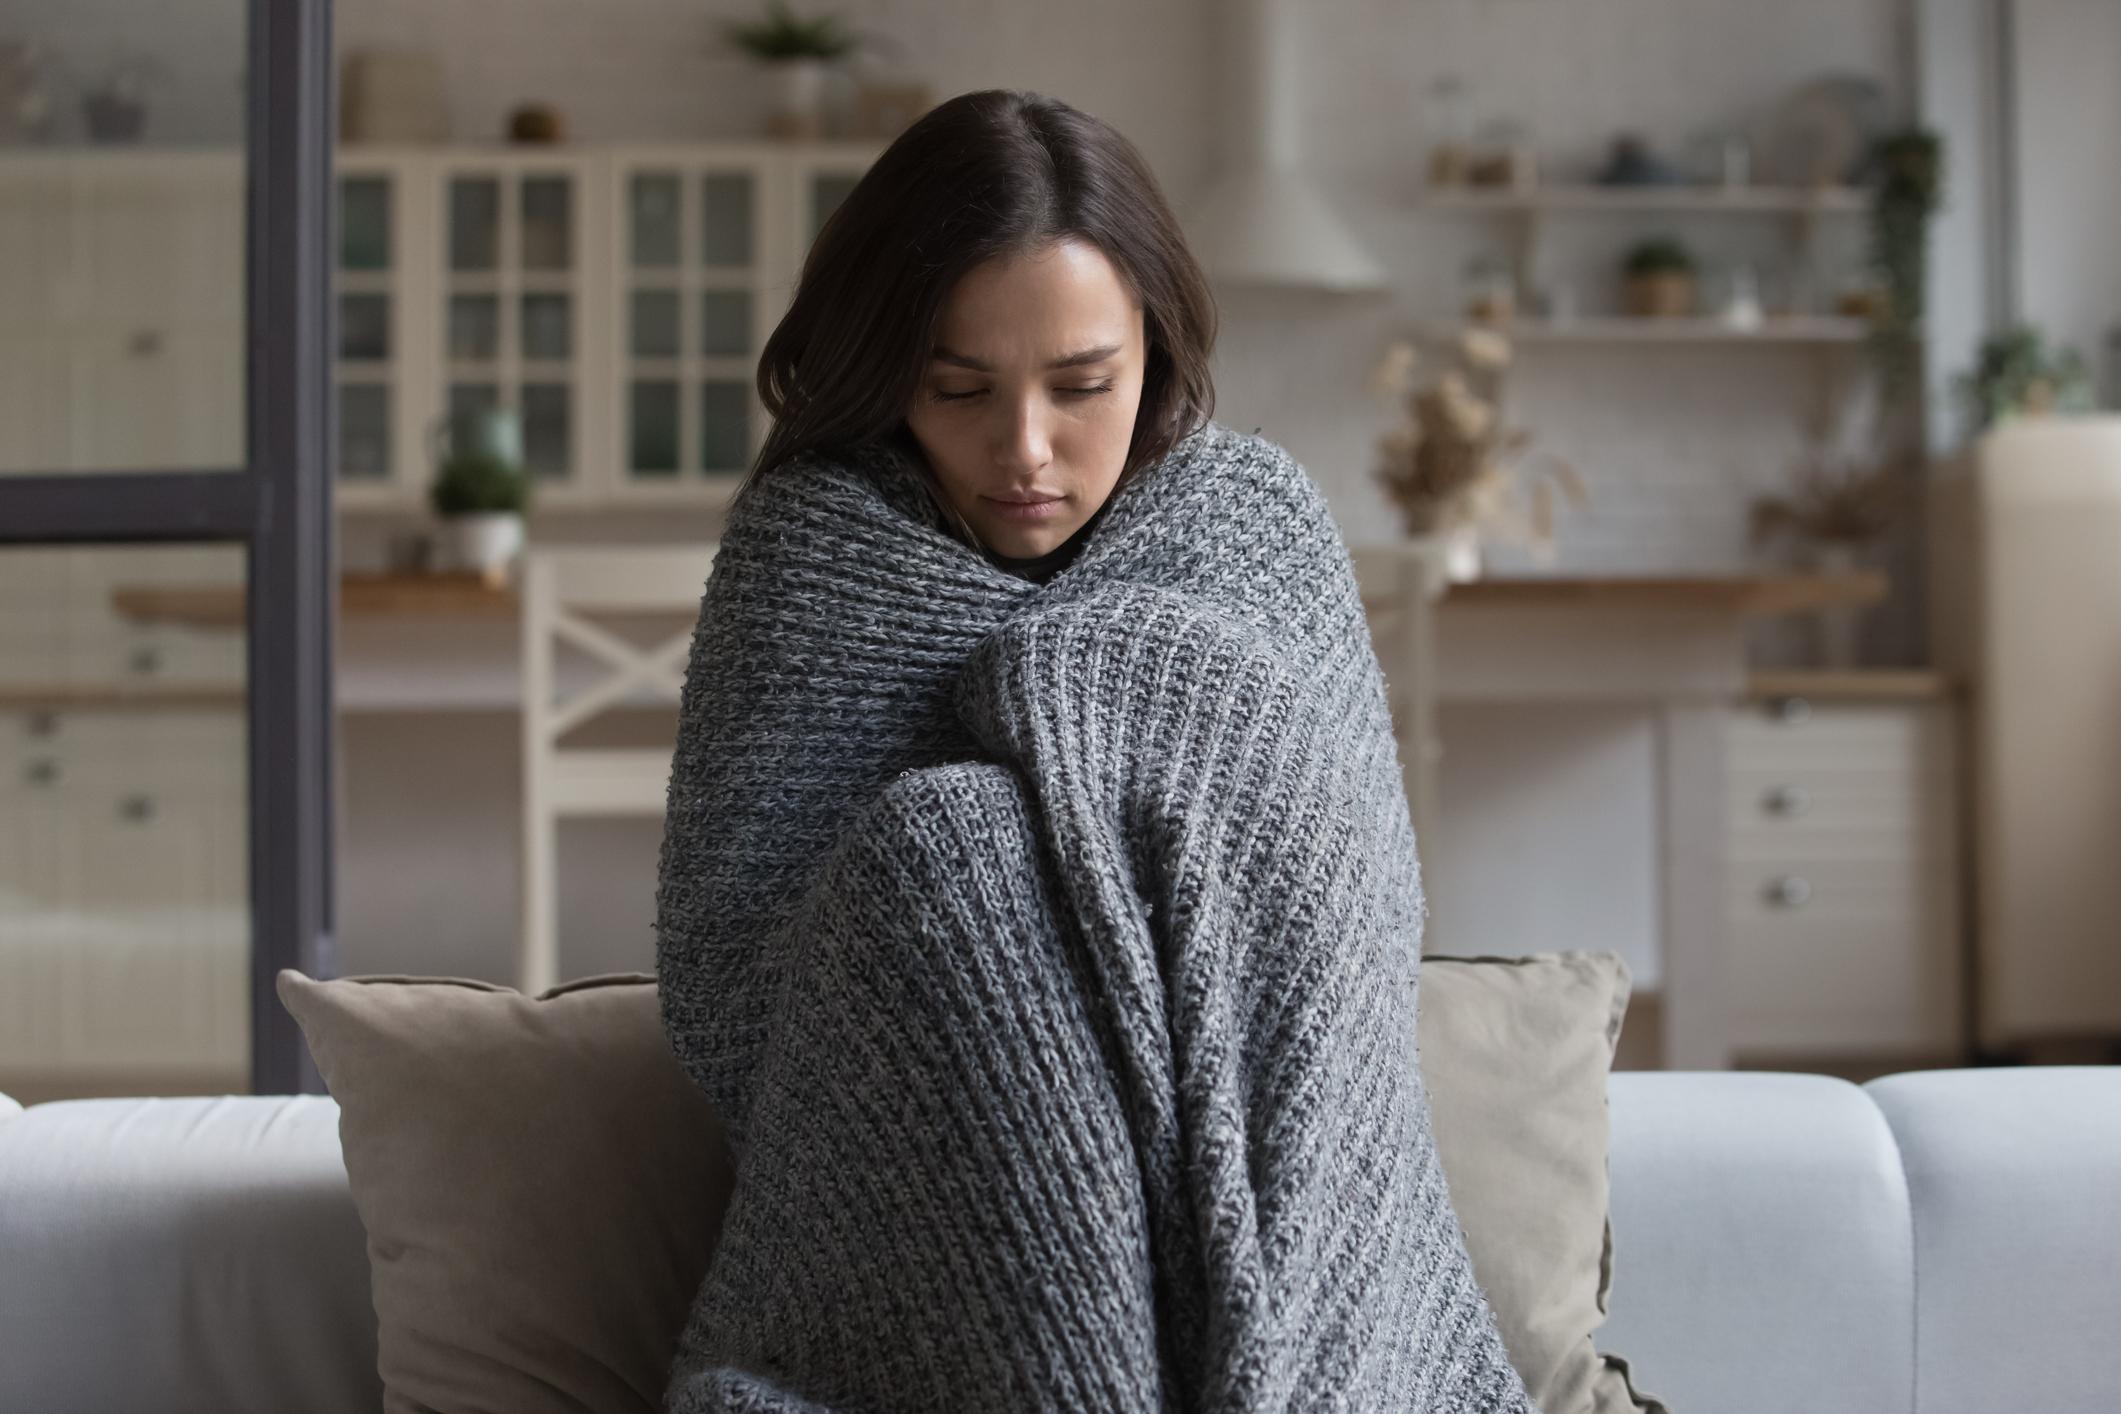 Grand froid : 3 conseils d'expert pour garder une santé immunitaire optimale  